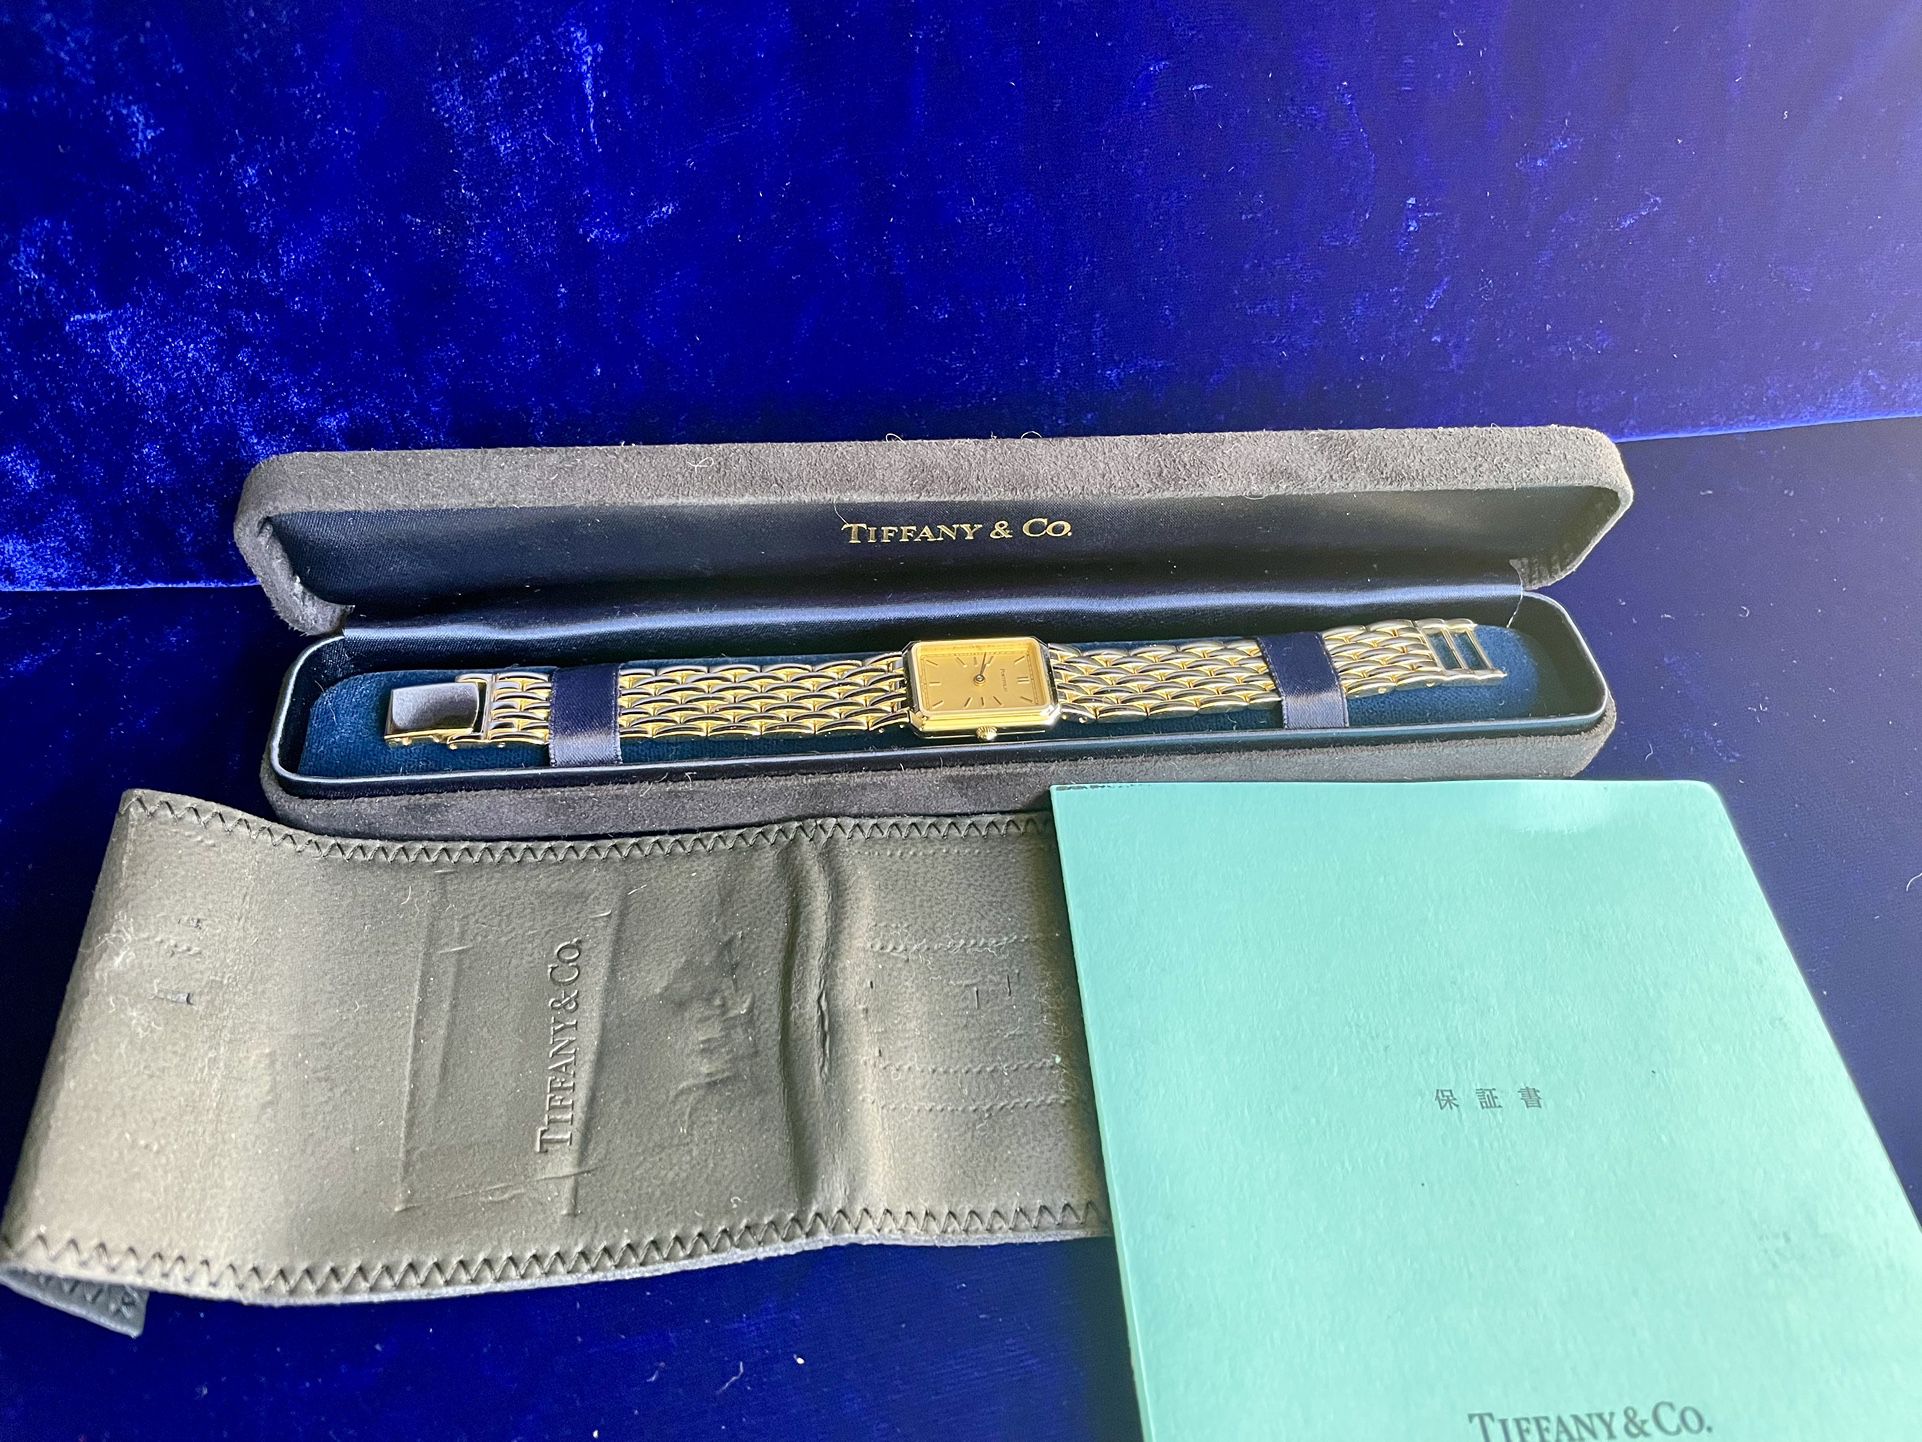 Tiffany & Co. 18K Gold Plated Portfolio Swiss Stainless Steel Wrist Watch Unisex